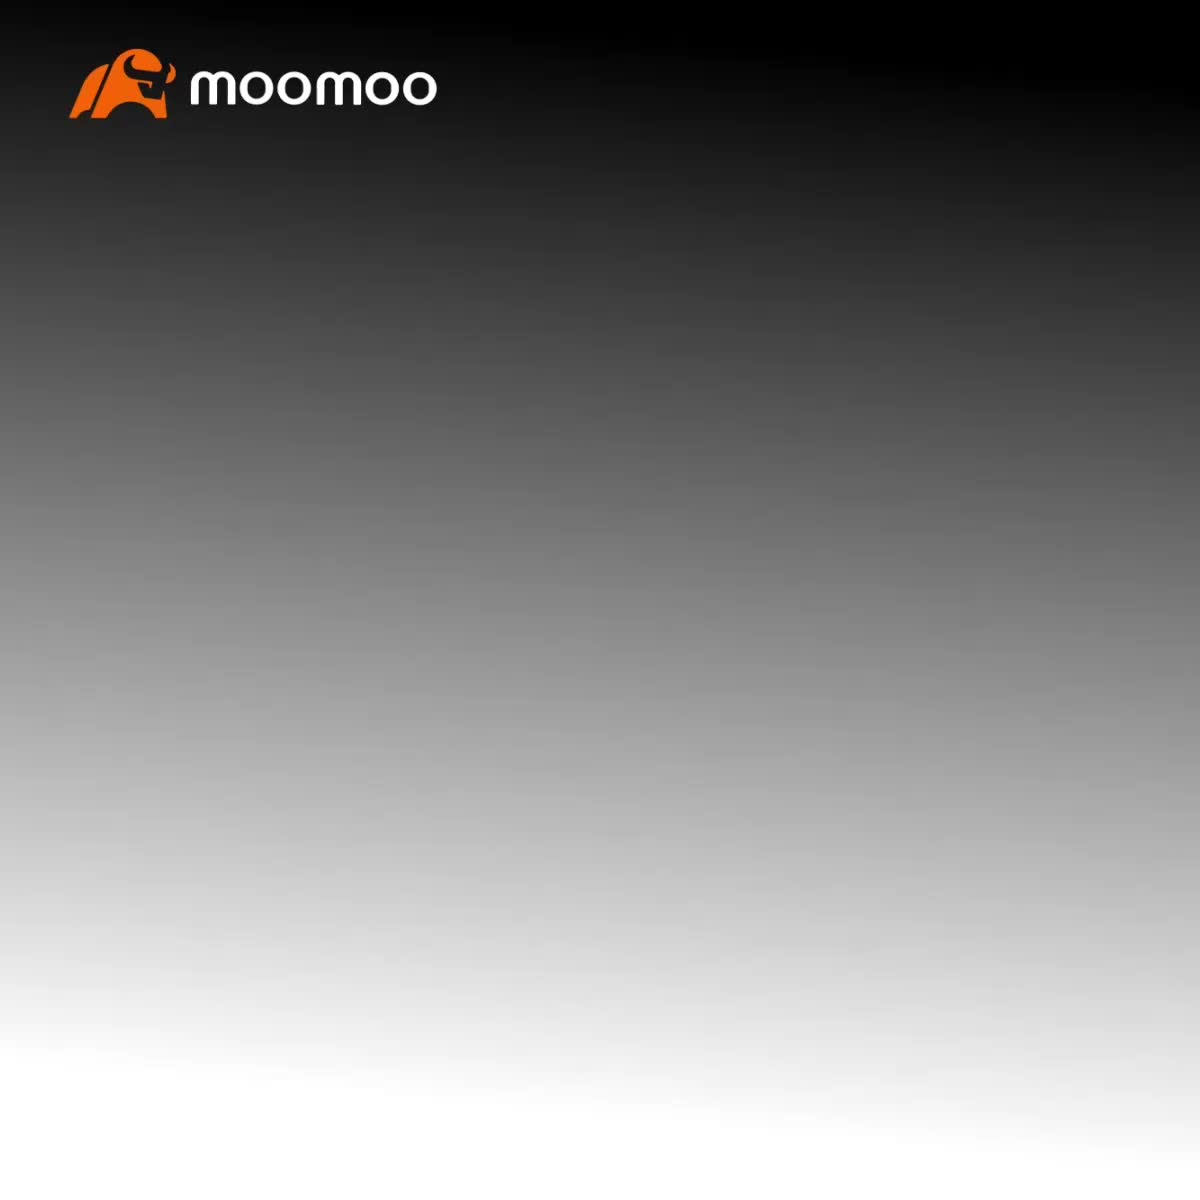 Moomoo NX 发布：加入并有可能以功能体验官的身份获得 50 美元的现金奖励！